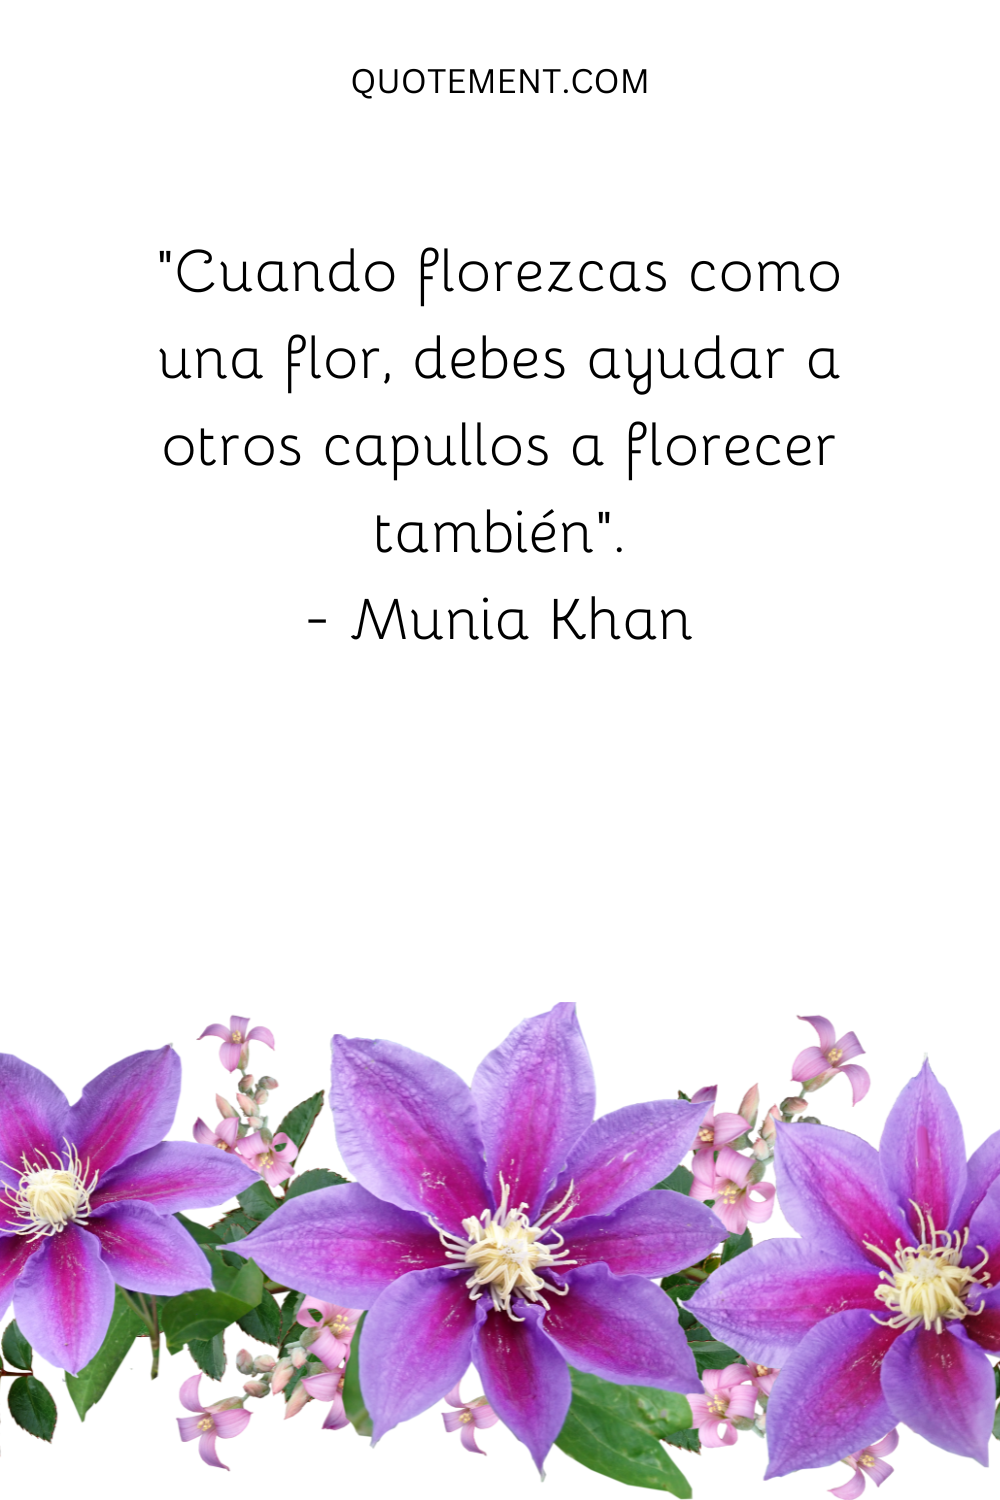 "Cuando florezcas como una flor, debes ayudar a otros capullos a florecer también". - Munia Khan